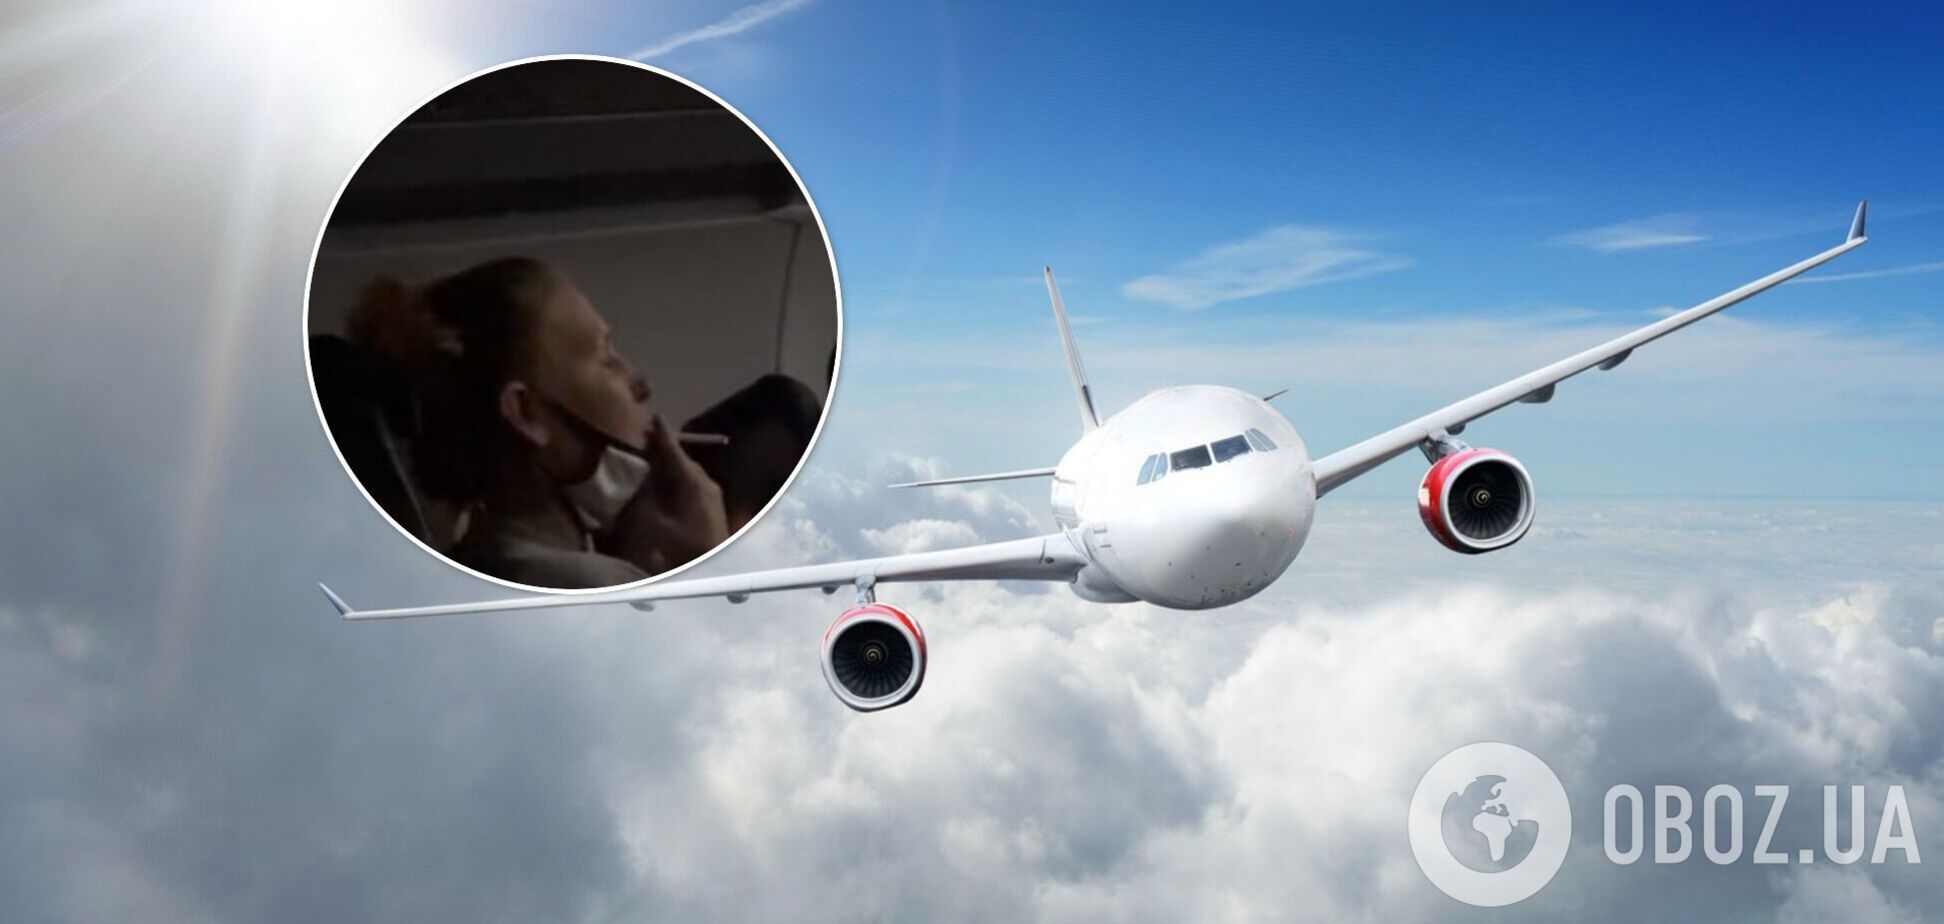 Пассажирка самолета устроила скандал, когда ей запретили курить. Видео